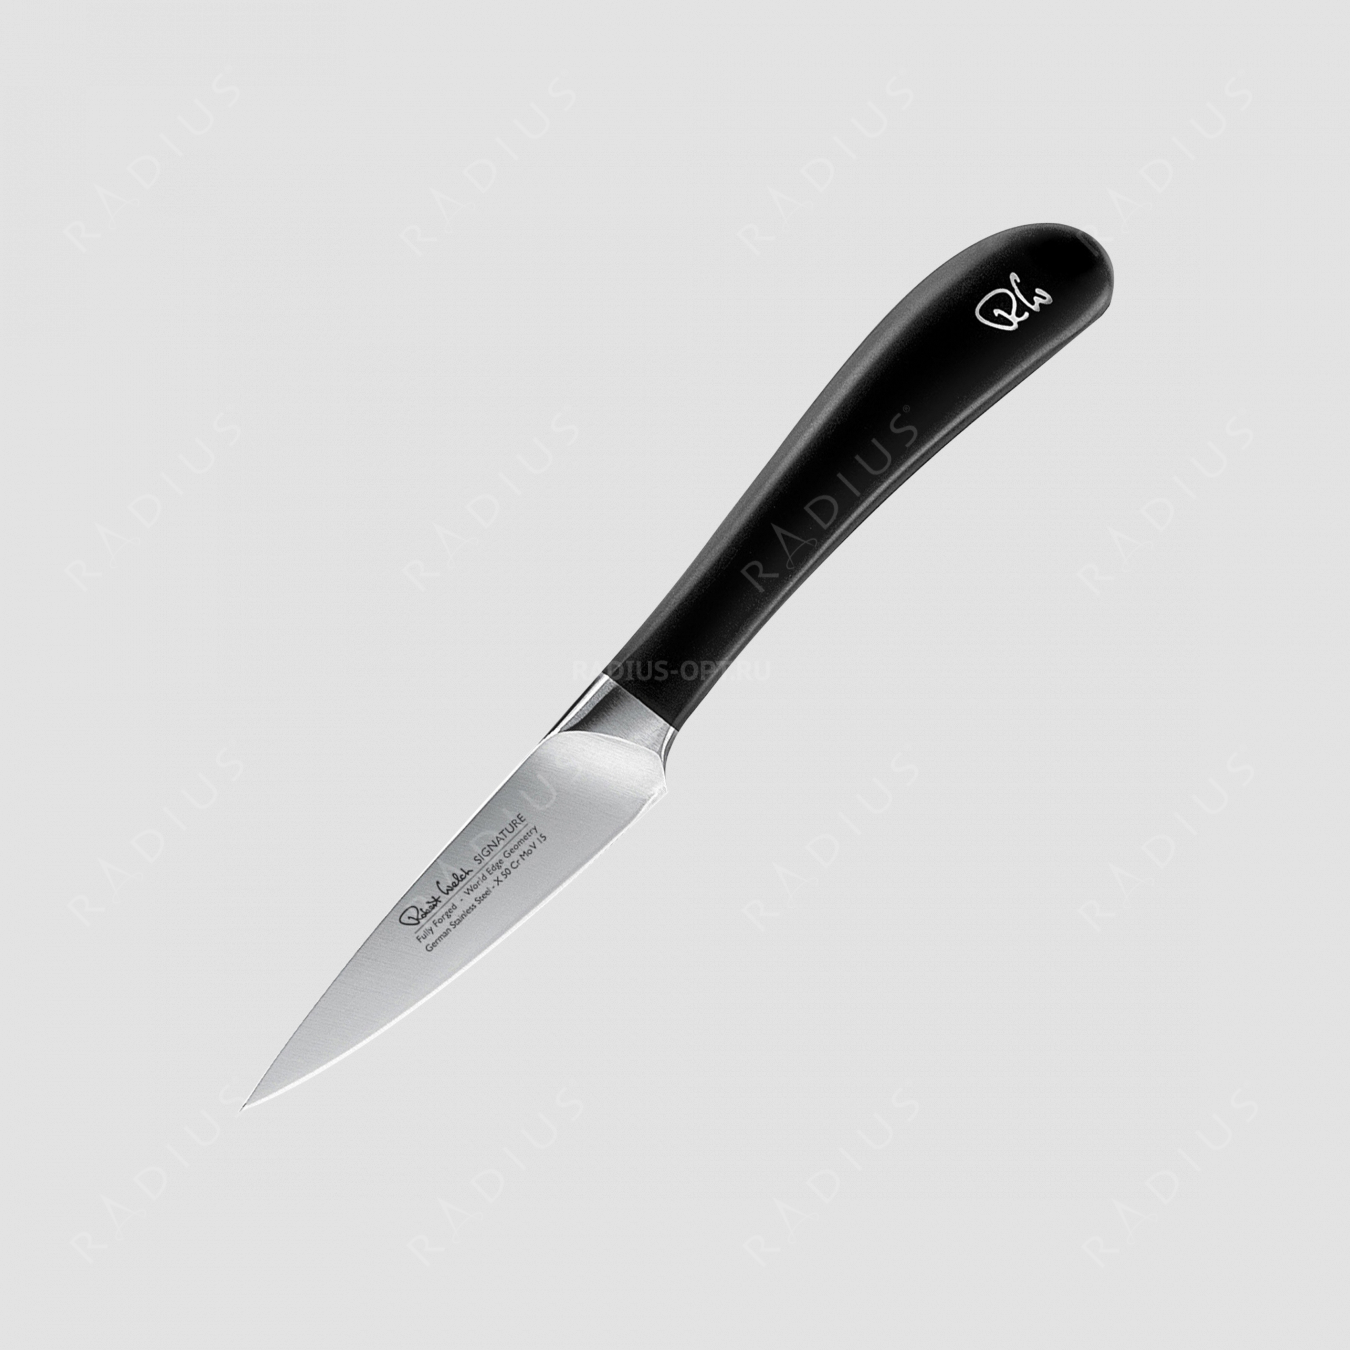 Нож кухонный для чистки овощей и фруктов 8 см, серия Signature, ROBERT WELCH, Великобритания